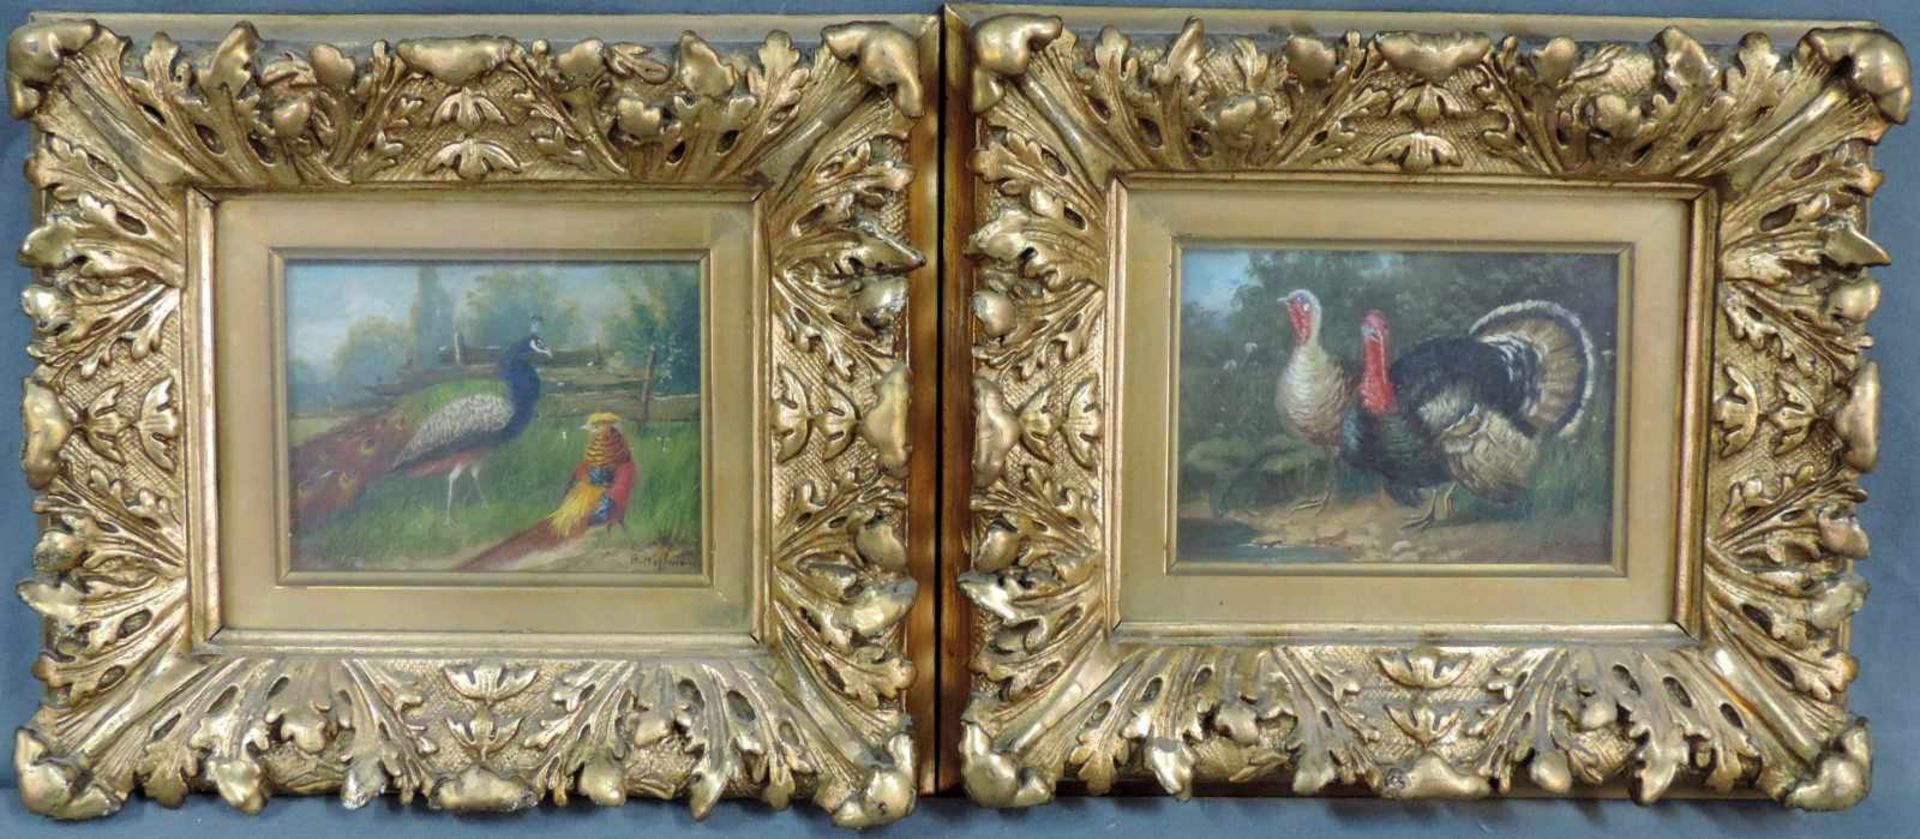 E. HOFFMANN (XX). Zwei Vogelbilder. Je 9,5 cm x 13 cm. Gemälde. Öl auf Holz. Rechts unten